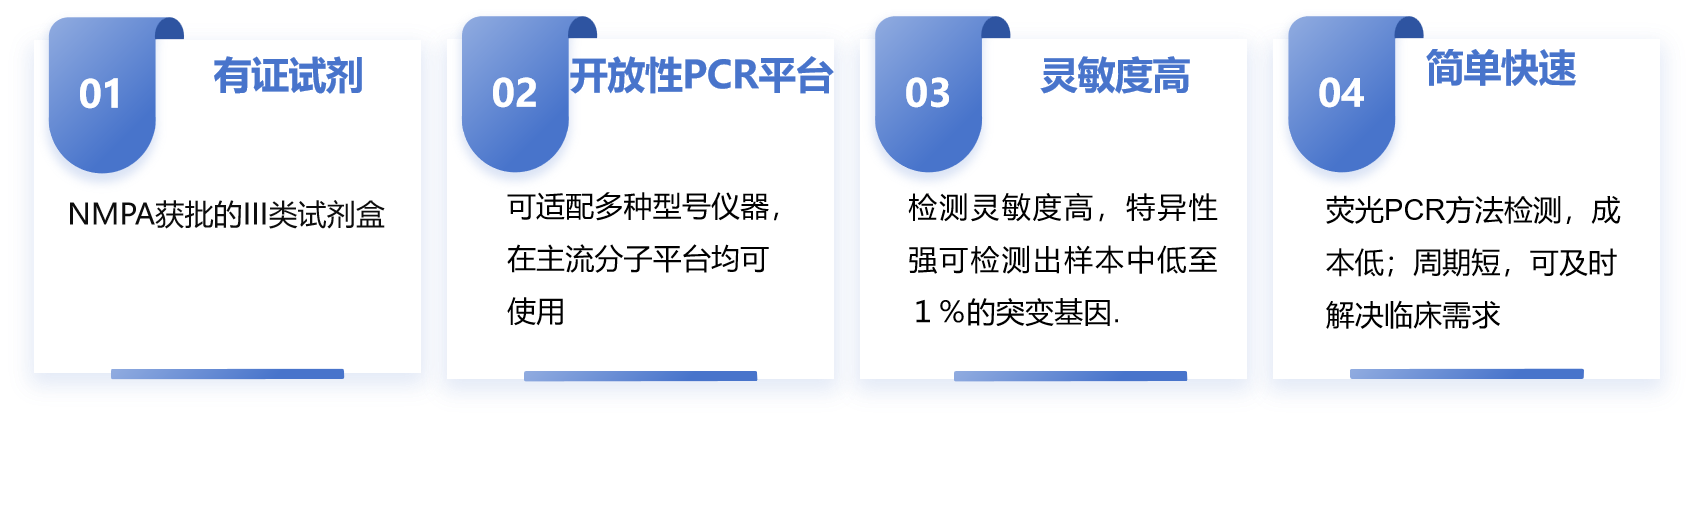 肿瘤基因PCR产品特色.png